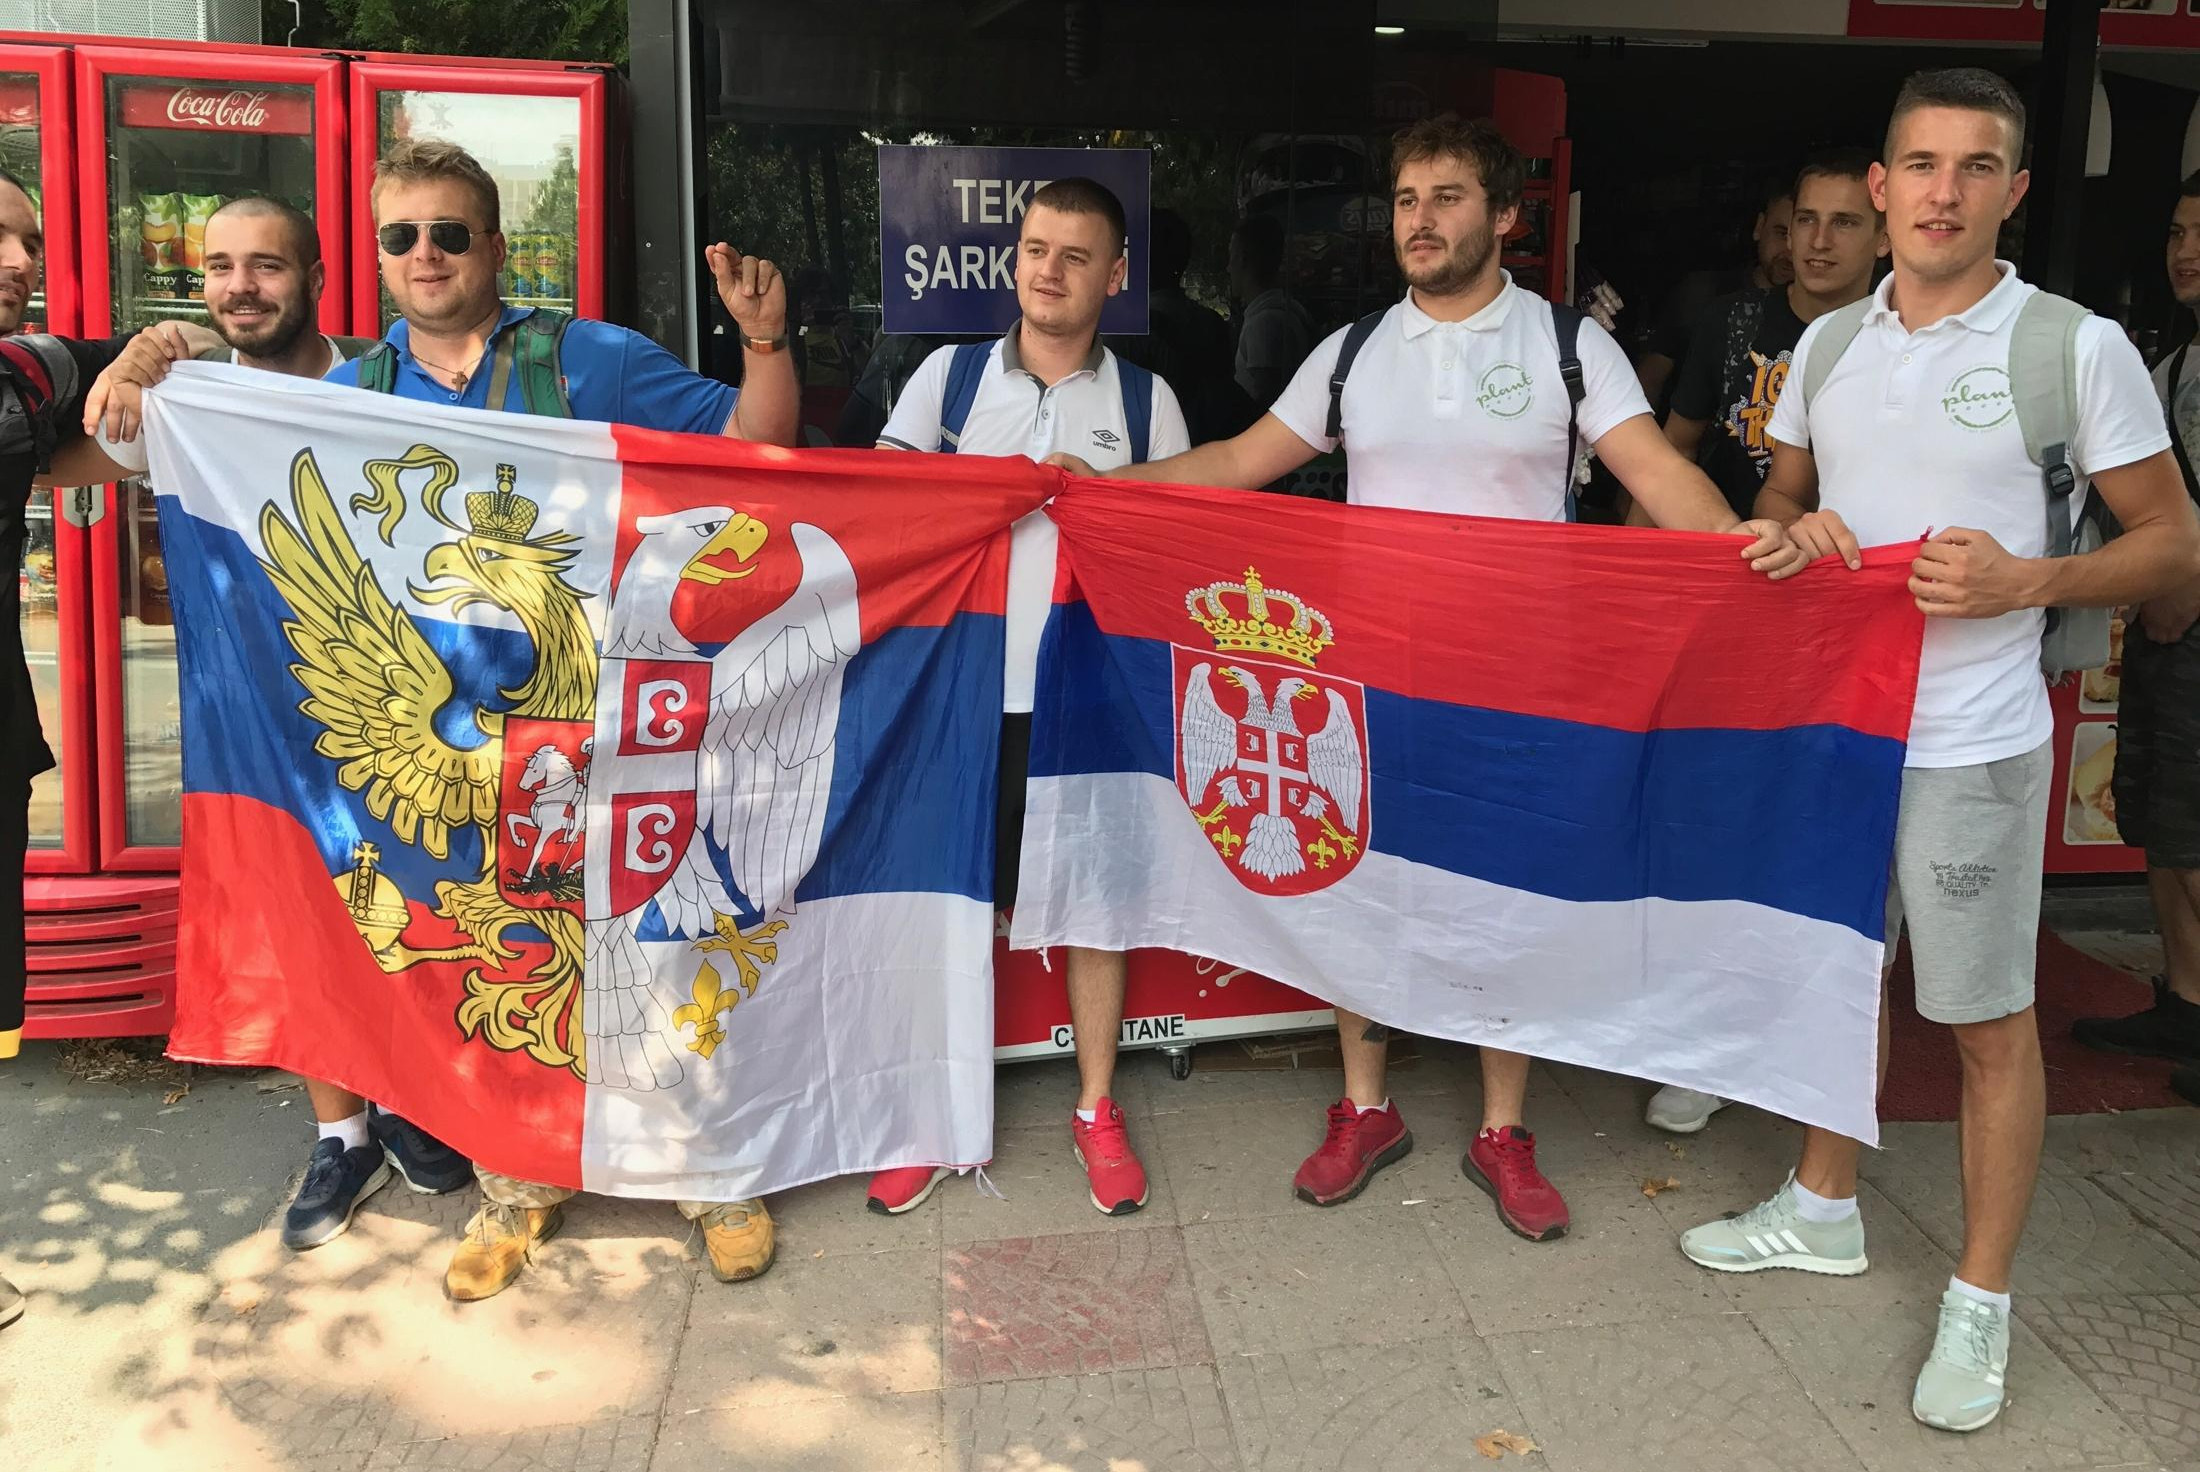 (FOTO) VRI PRED ISTORIJSKO FINALE! Srpski navijači nerviraju Slovence: "Orlovi" će vas razbiti!